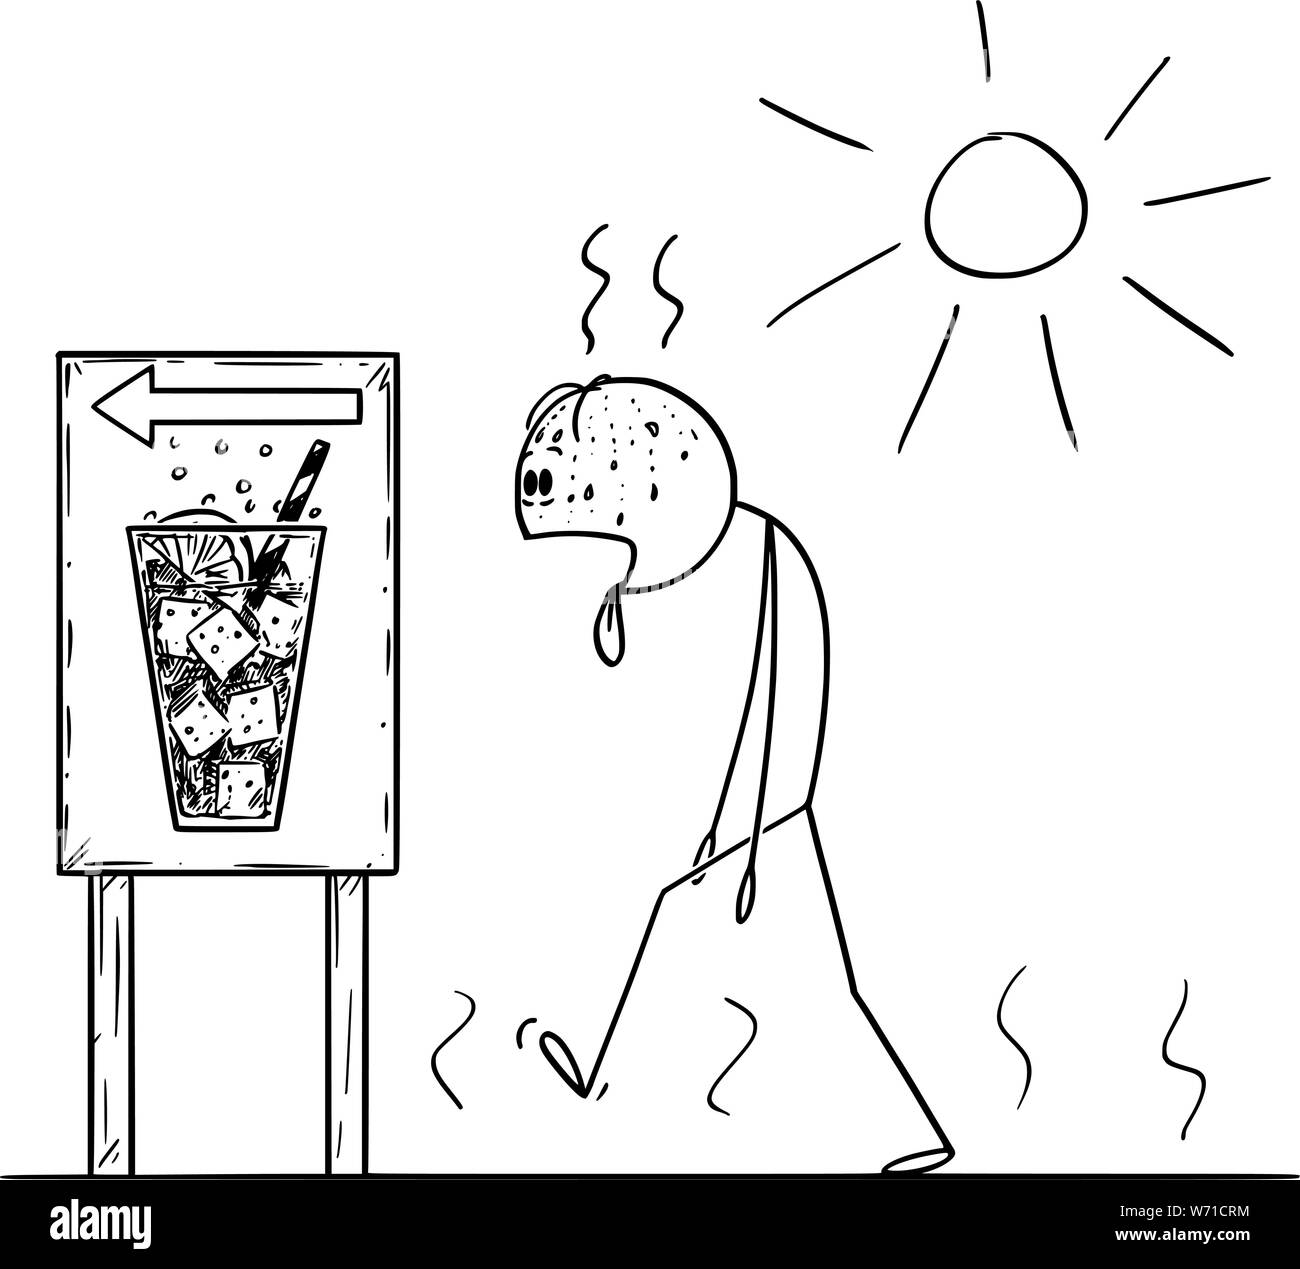 Vector cartoon stick figura disegno illustrazione concettuale di esaurito uomo a camminare nella giornata di sole in estate per comprare bevanda fredda o soda con la linguetta che si stravacca fuori. Illustrazione Vettoriale